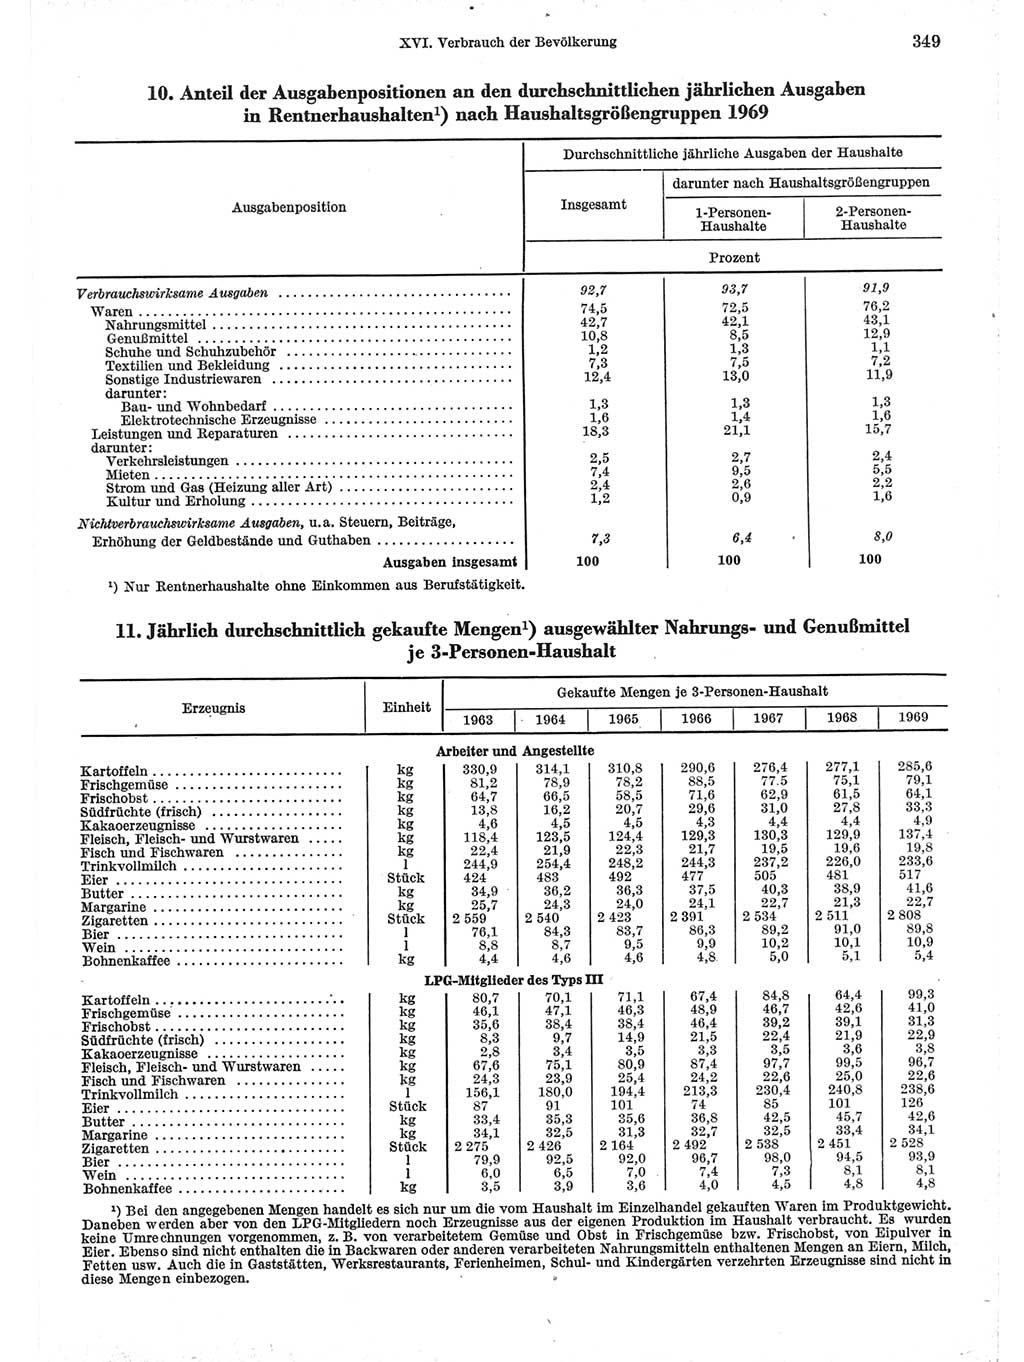 Statistisches Jahrbuch der Deutschen Demokratischen Republik (DDR) 1971, Seite 349 (Stat. Jb. DDR 1971, S. 349)